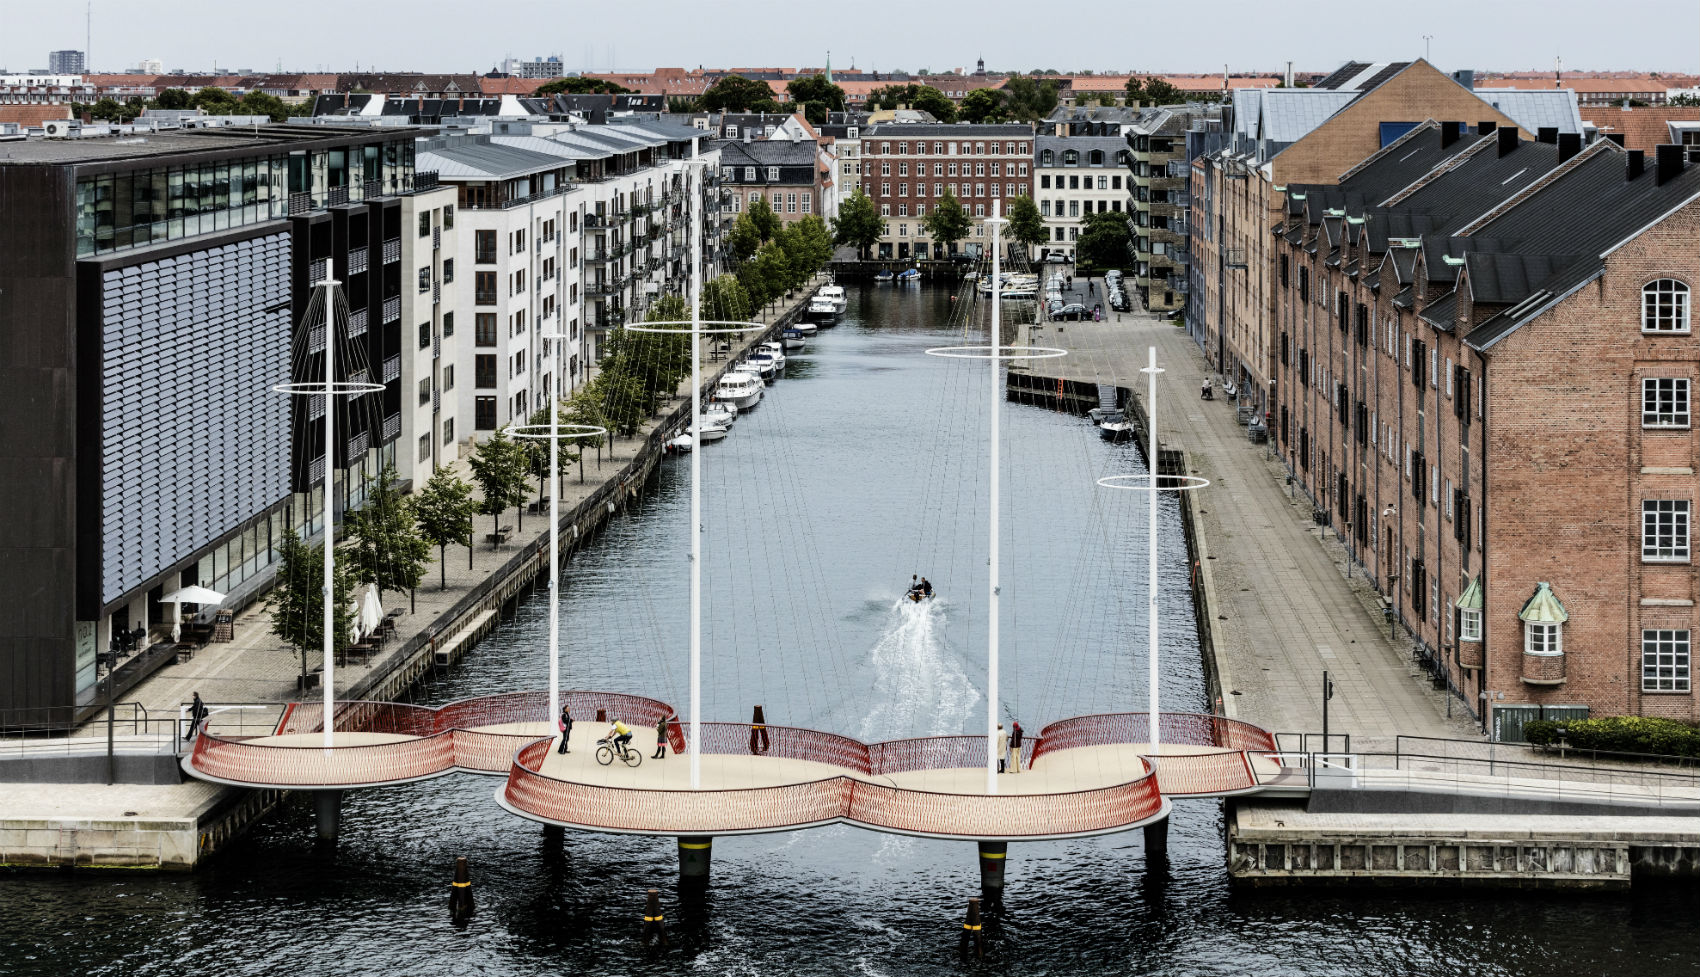 Opgive Bliv ved Astrolabe Ny cykelrute til store kunstoplevelser i København | Kunsthal  Charlottenborg | Udstillingsted for samtidskunst